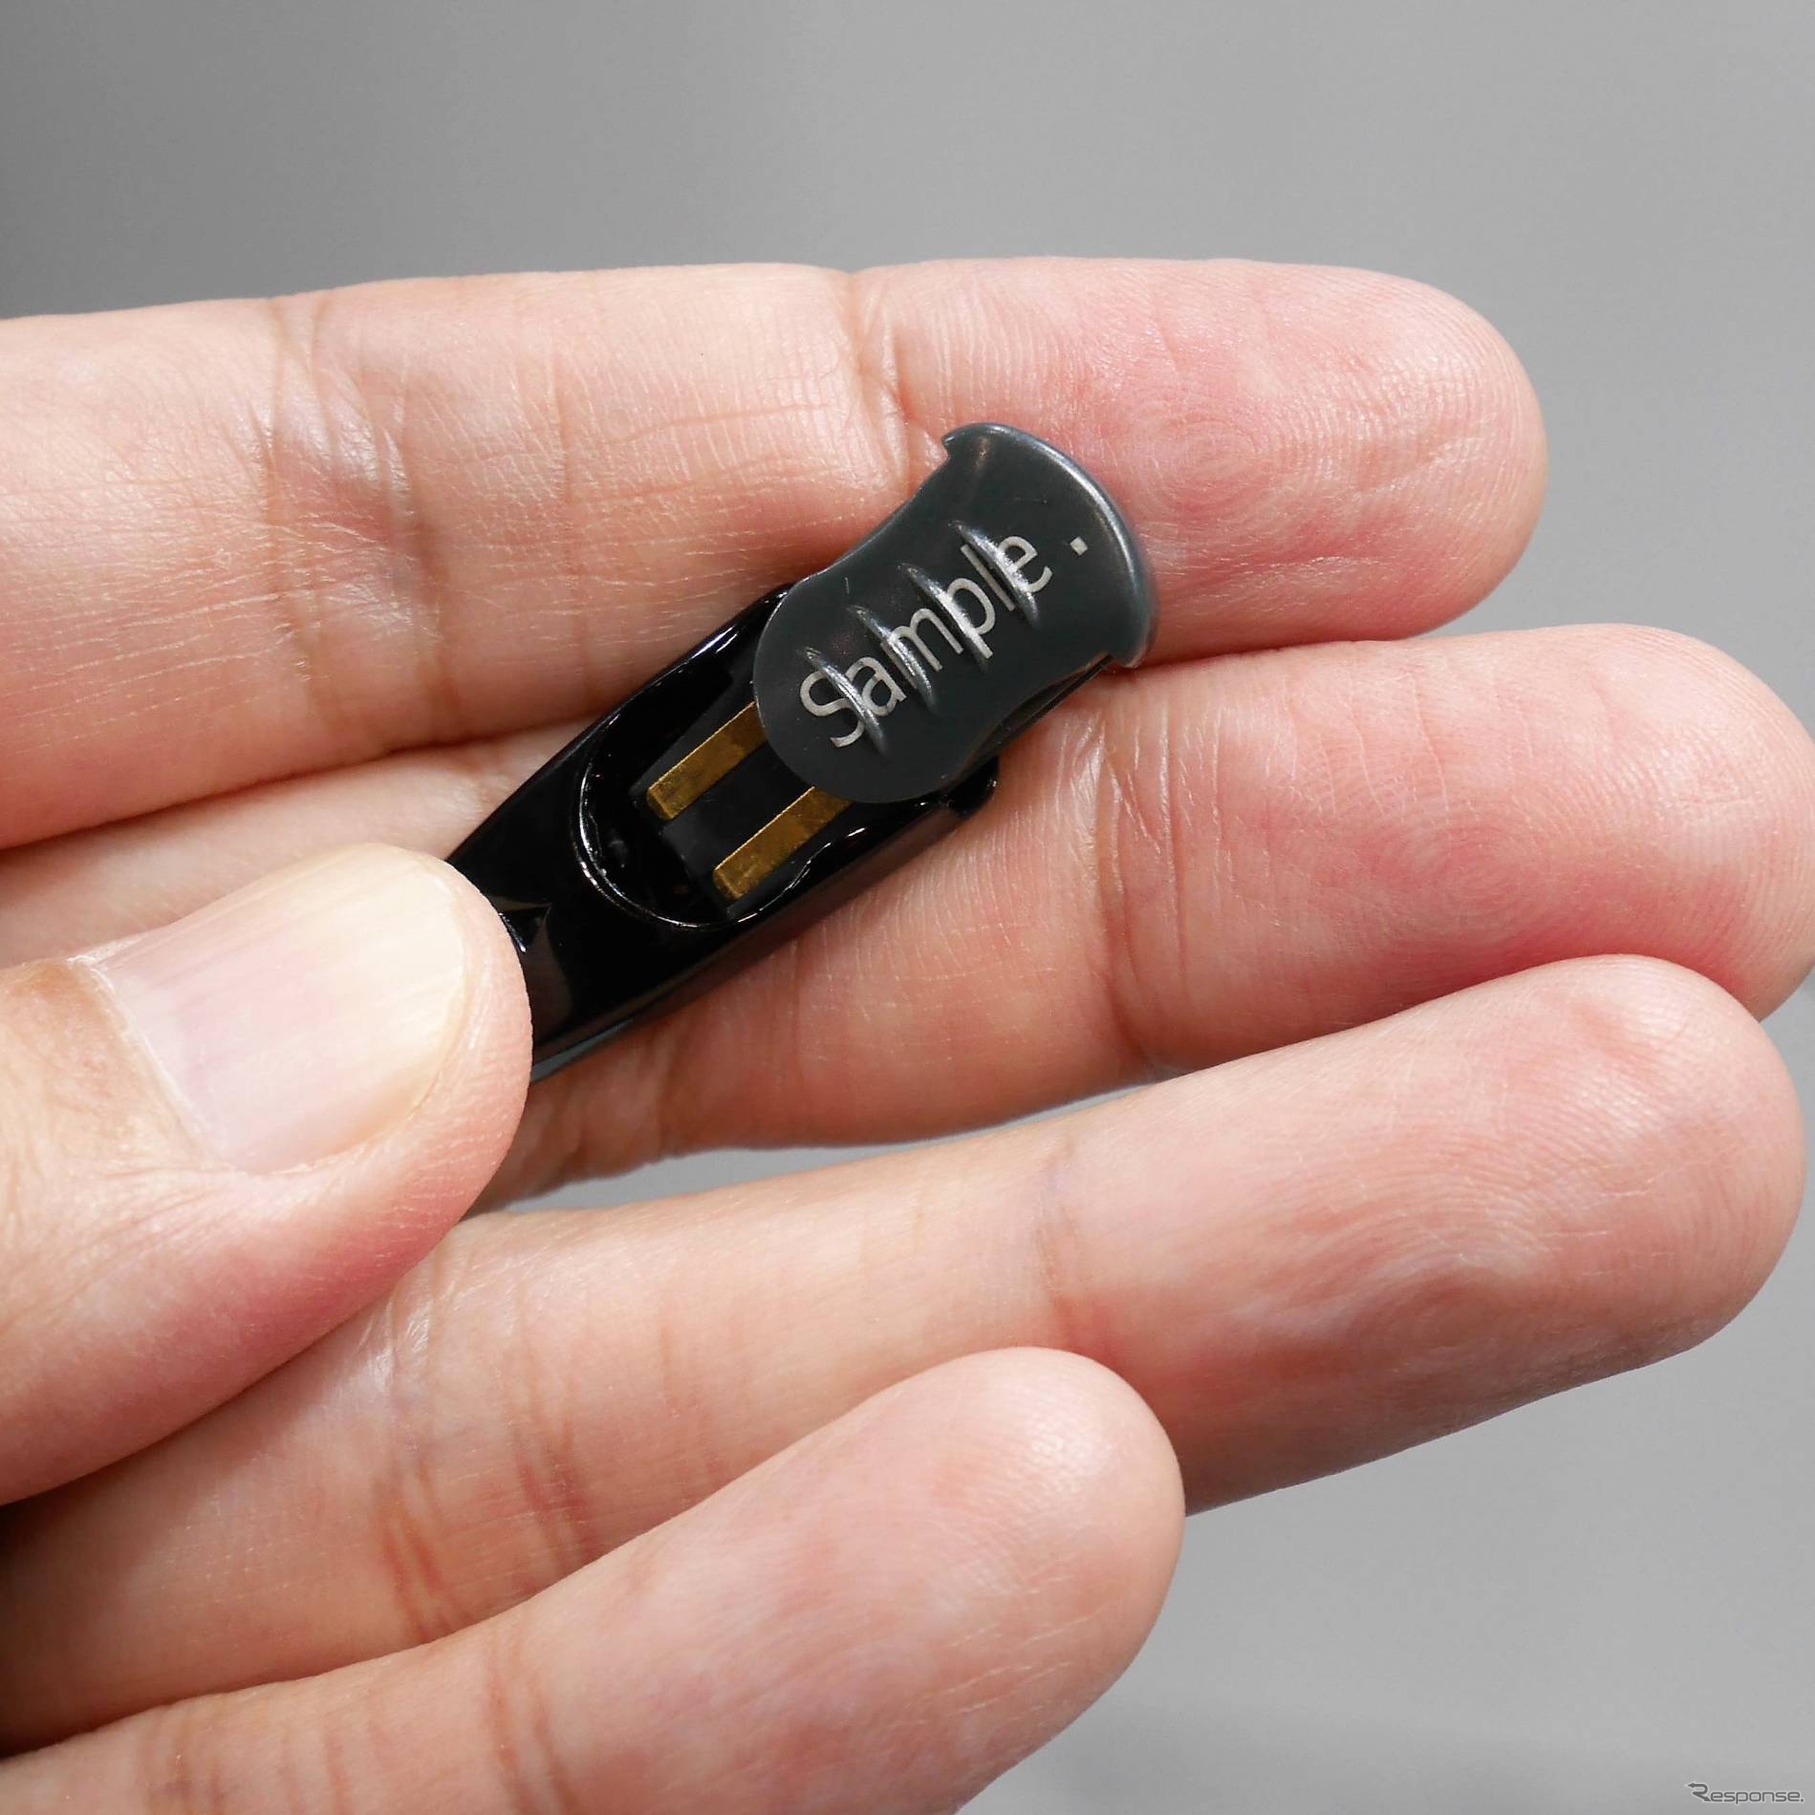 バッテリーはツルの耳の部分に仕込まれている。通常使用で1-2週間もつという。